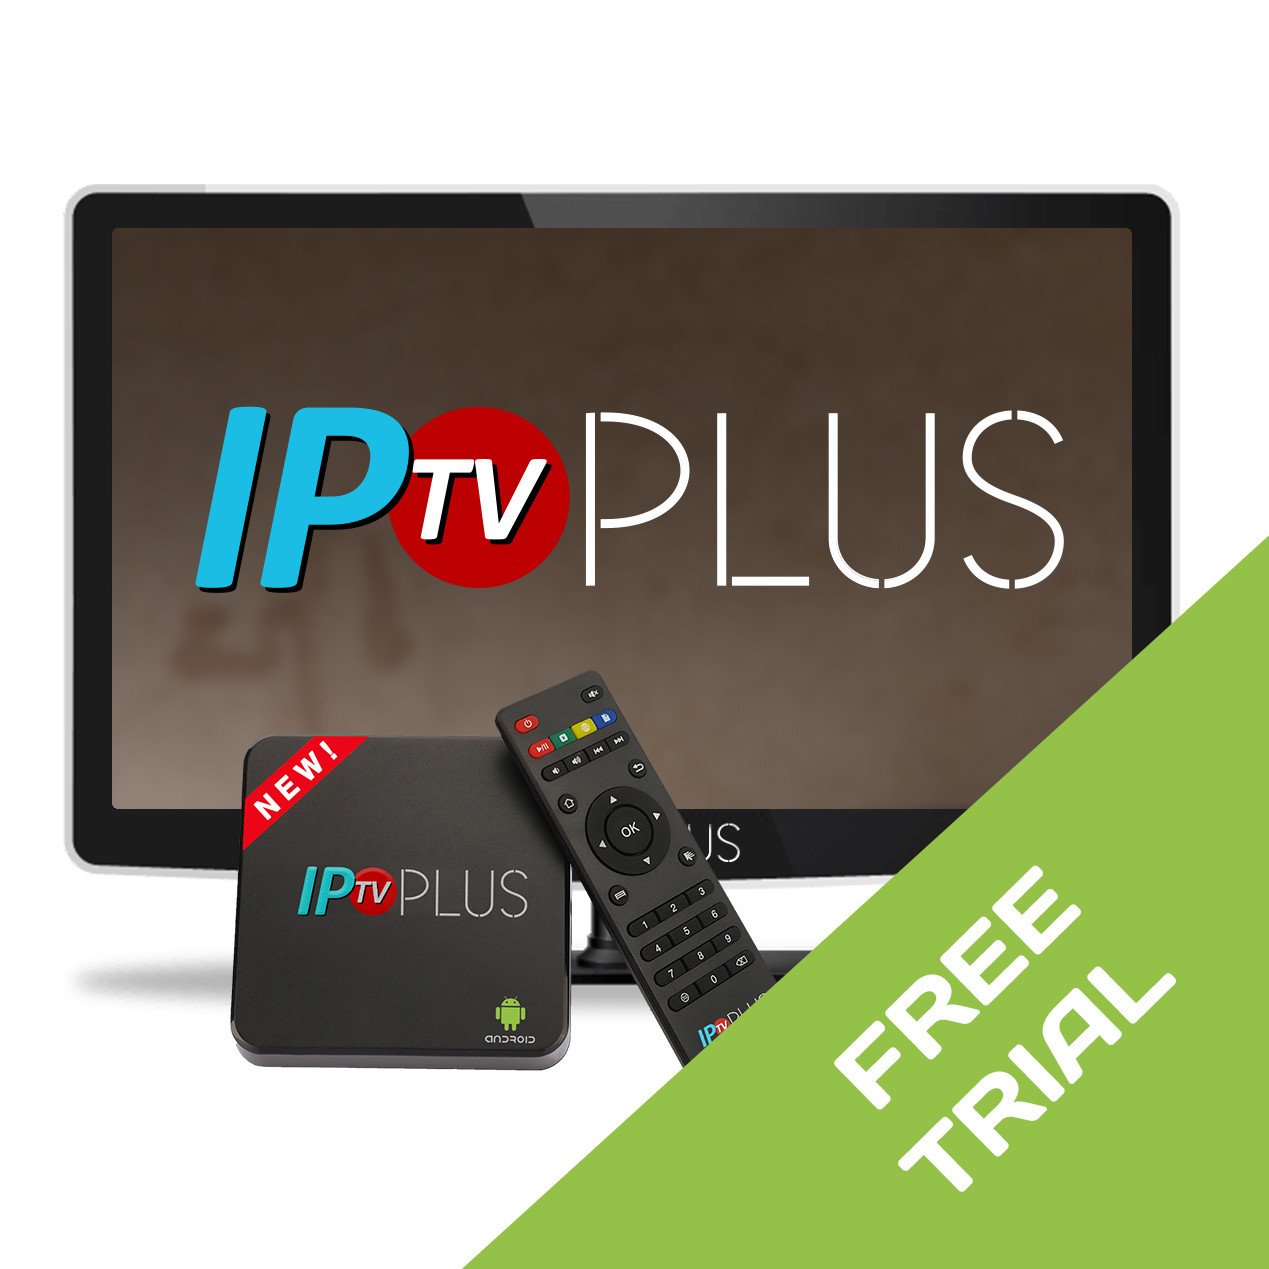 Free IPTV Trial - 48 Hours